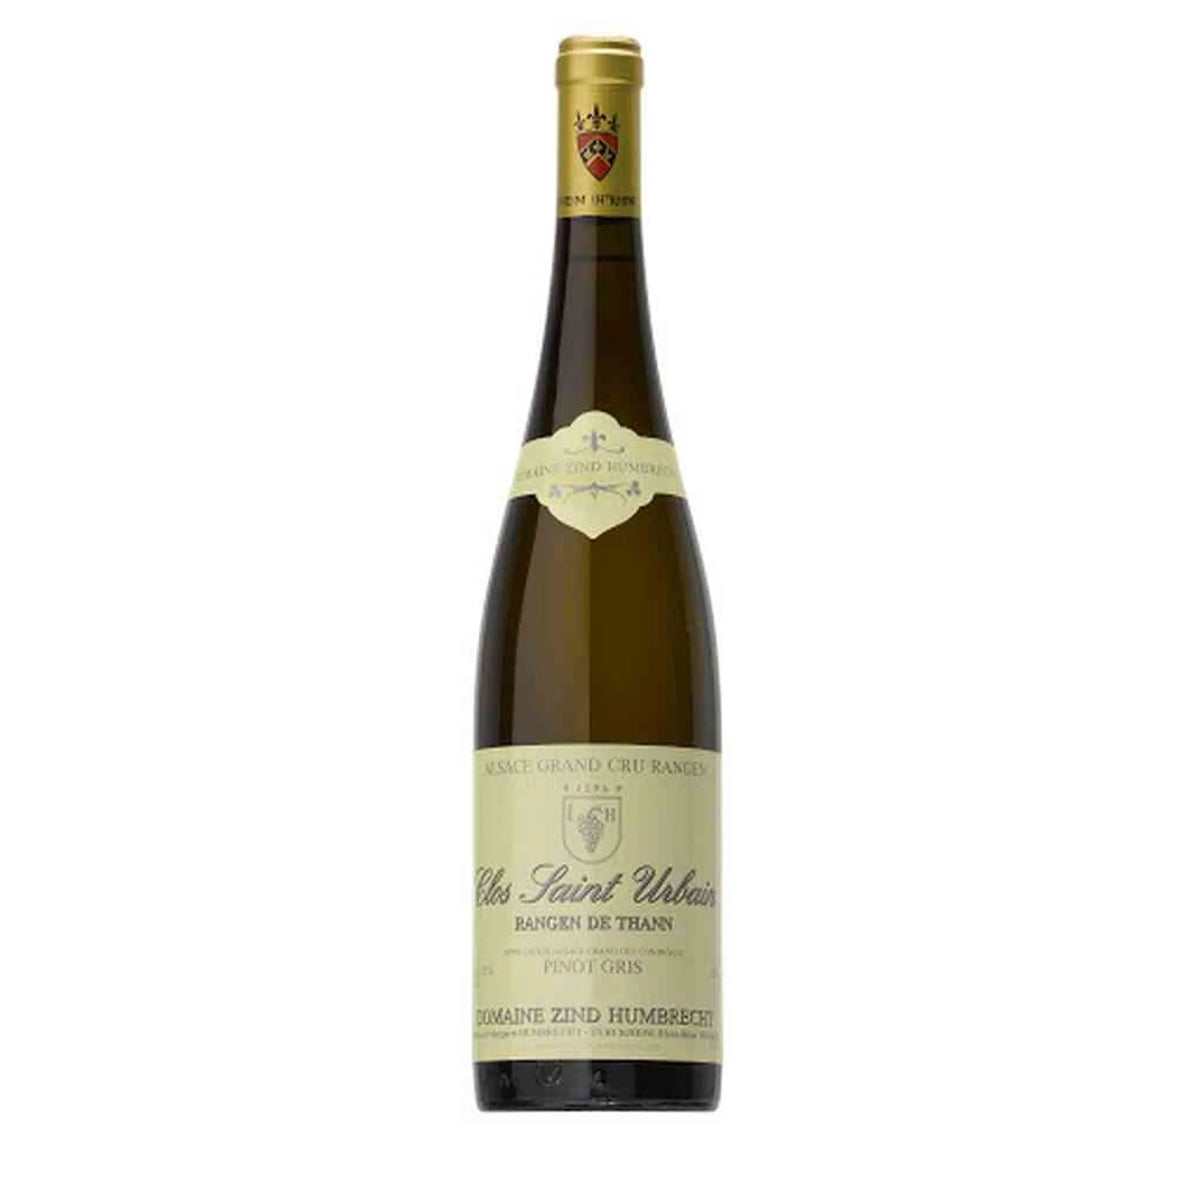 Domaine Zind-Humbrecht-Weißwein-Pinot Gris-2019 Pinot Gris Rangen de Thann Clos St Urbain -WINECOM